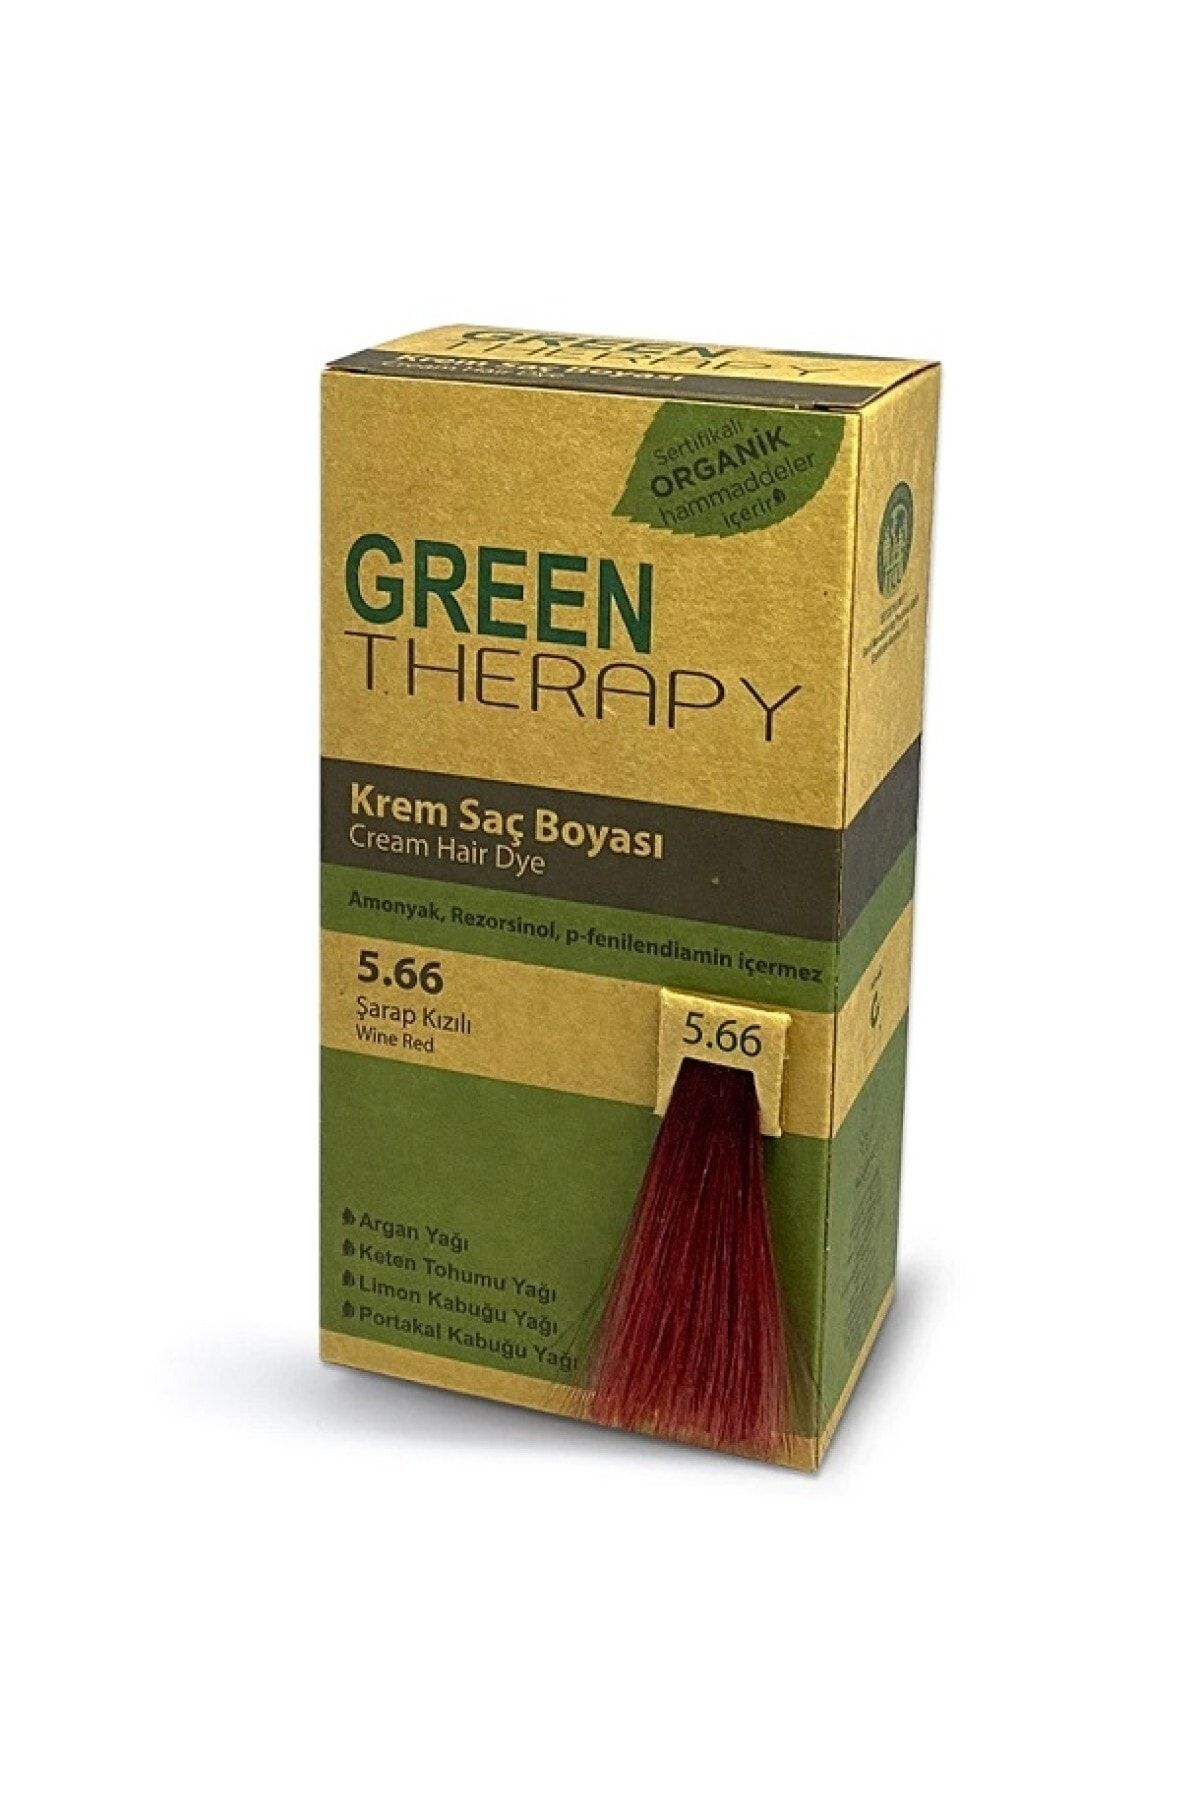 Green Therapy Krem Saç Boyası 5.66 Şarap Kızılı